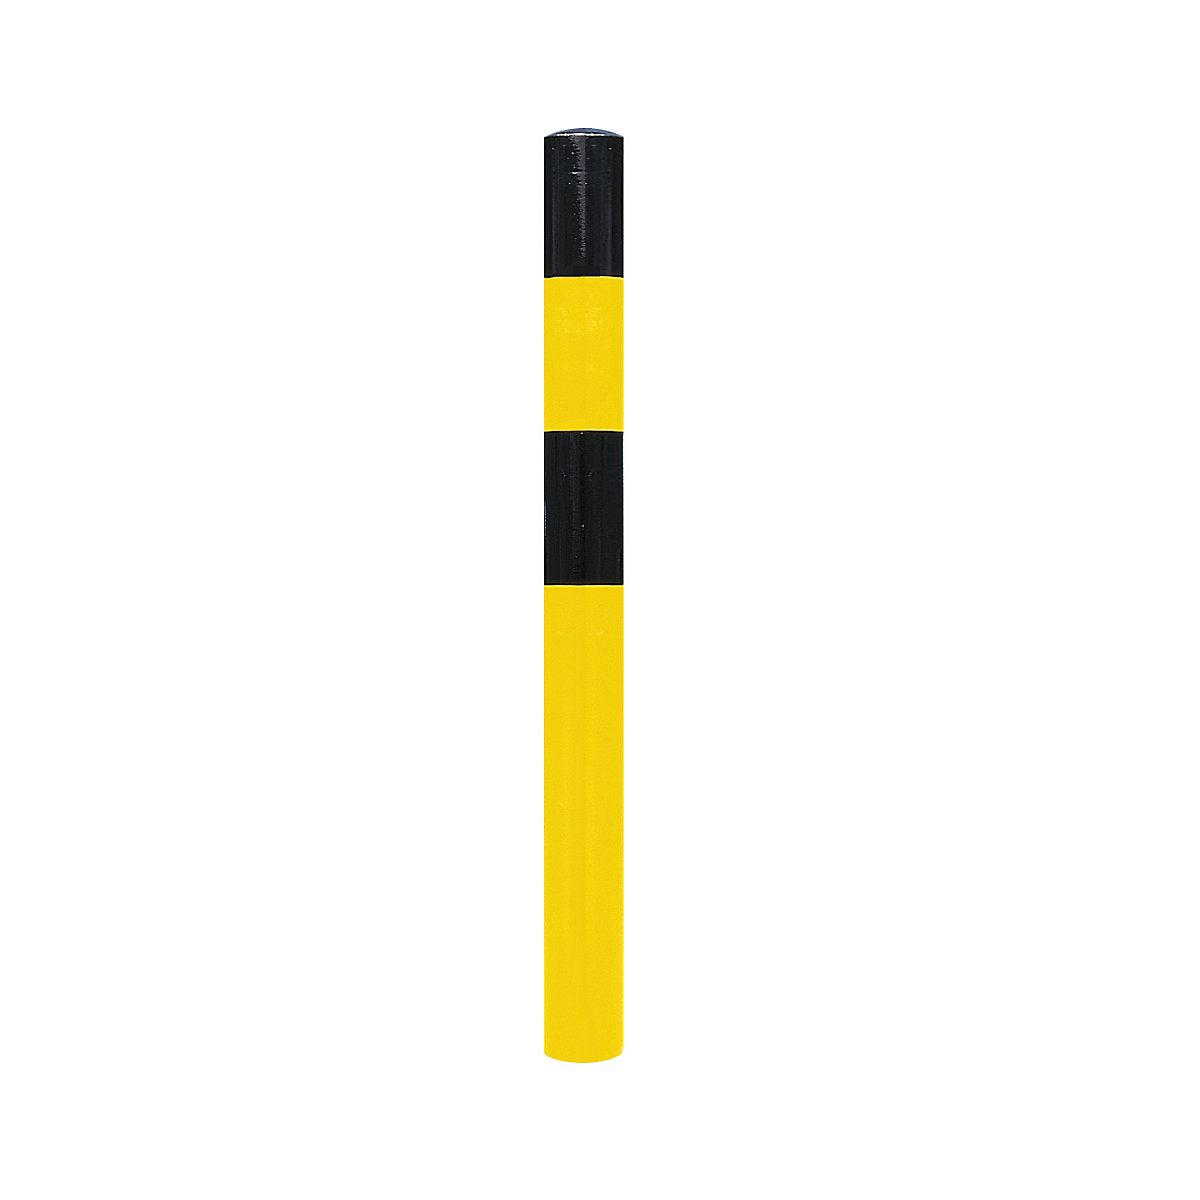 Stup za ograđivanje, za betoniranje, Ø 90 mm, lakiranje u crno-žutoj boji, 1 ušica-8